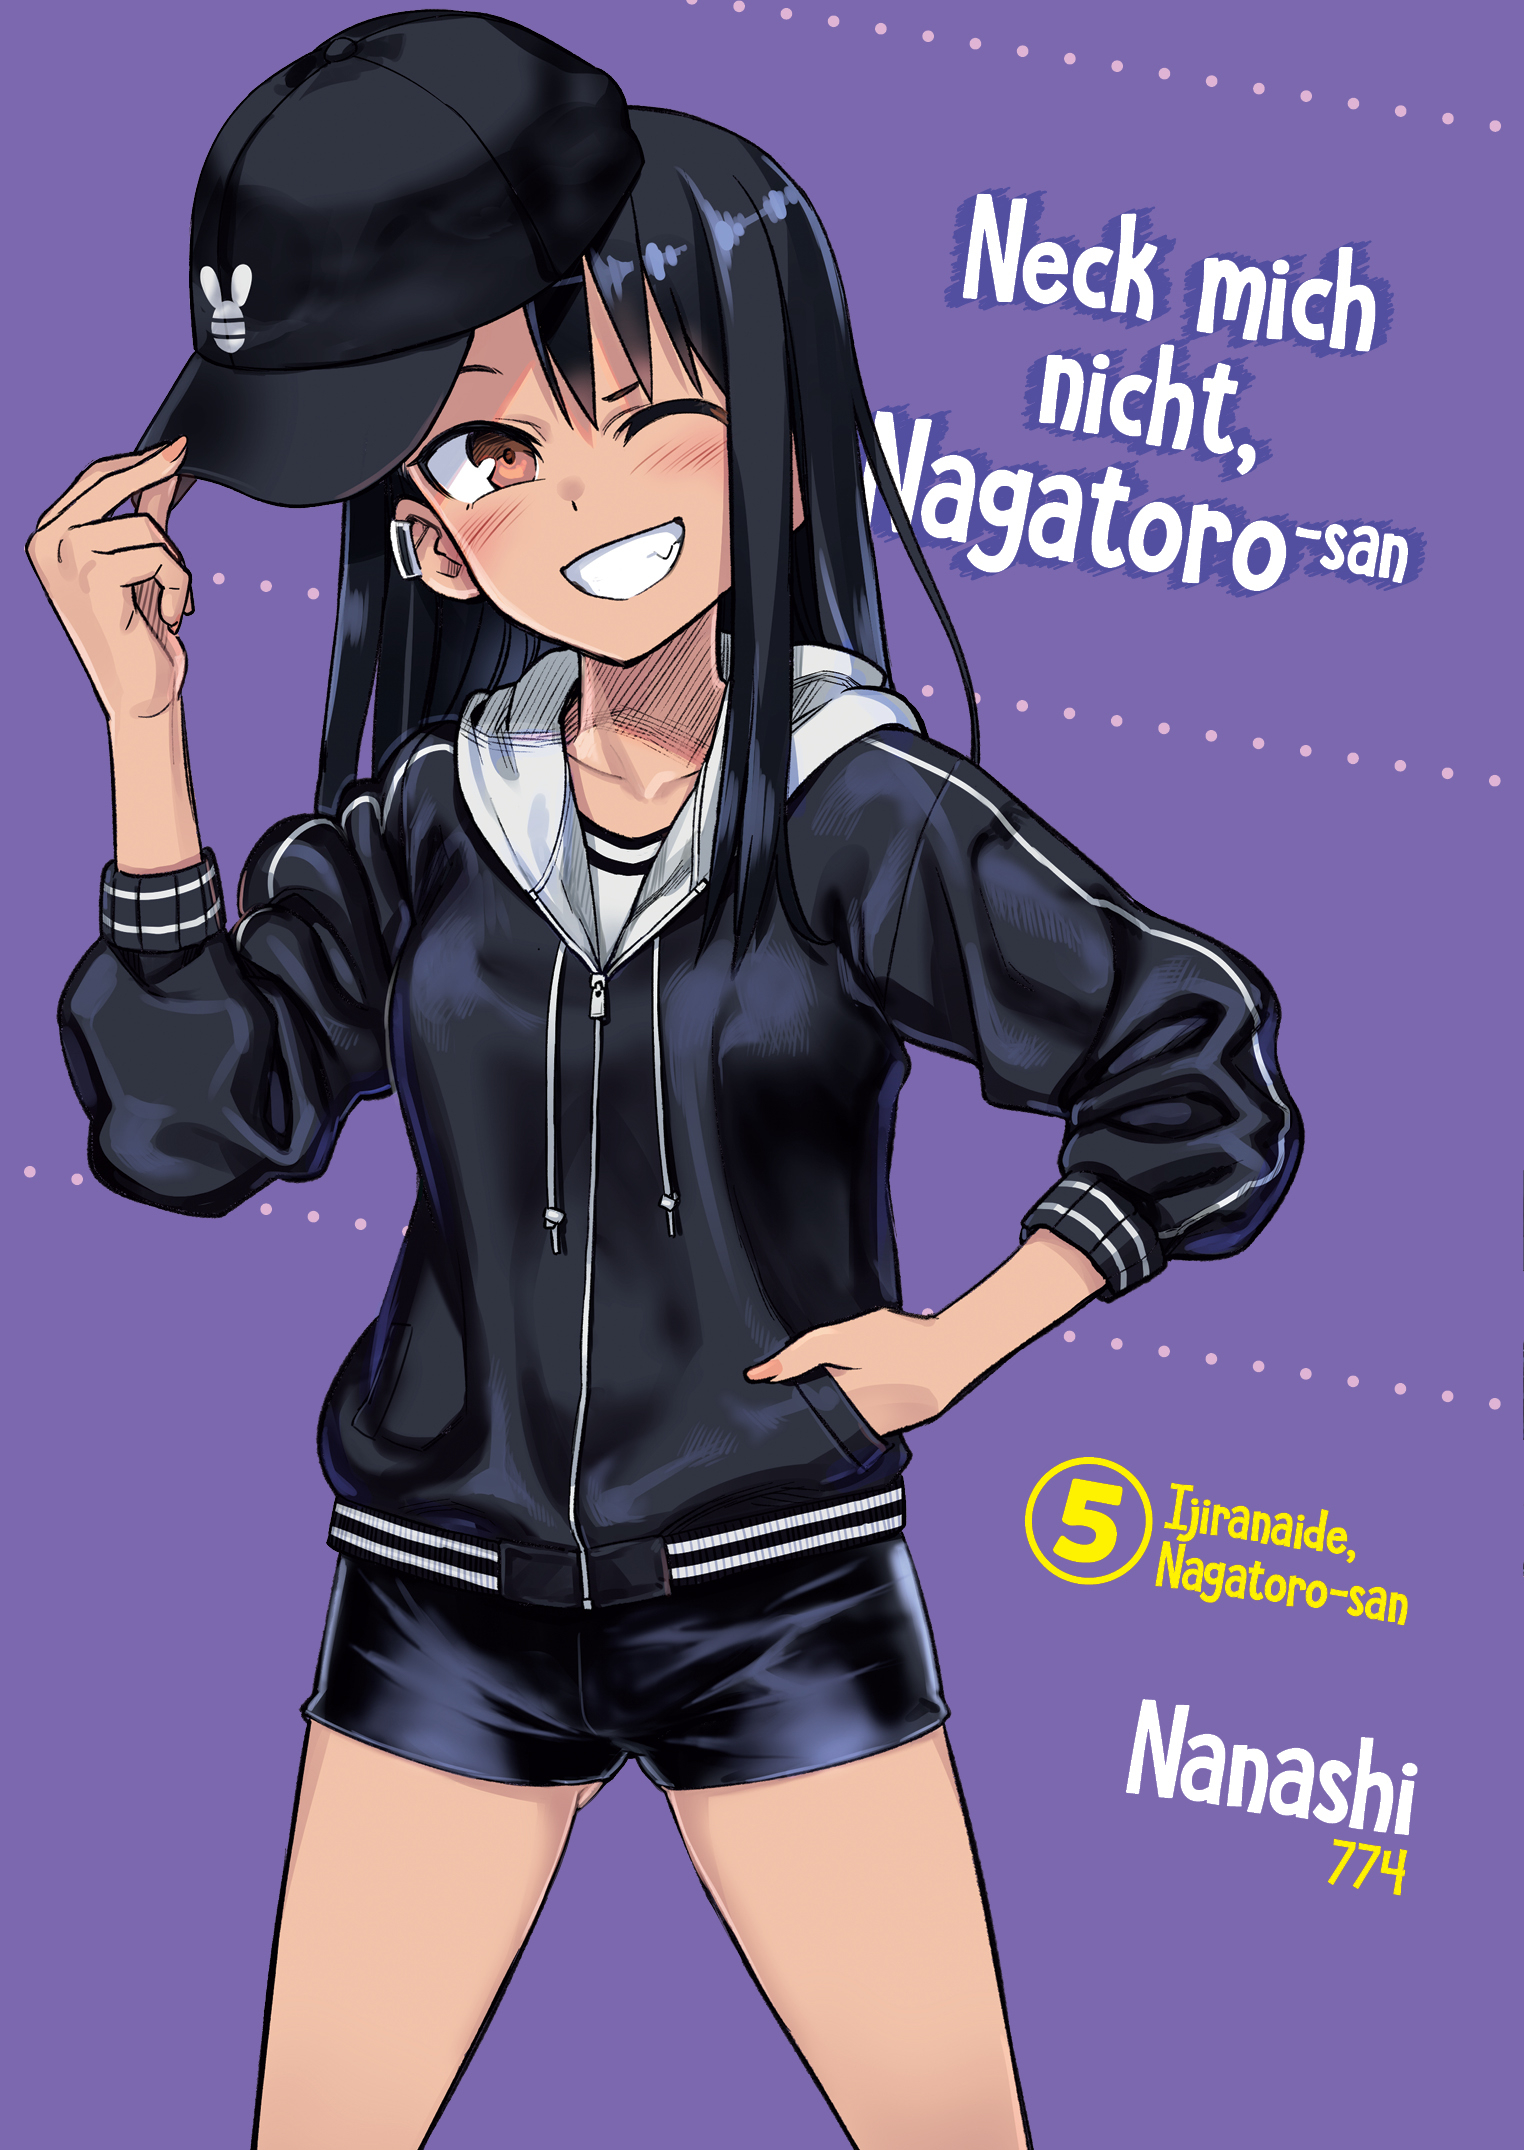 Neck mich nicht, Nagatorosan 05 Manga